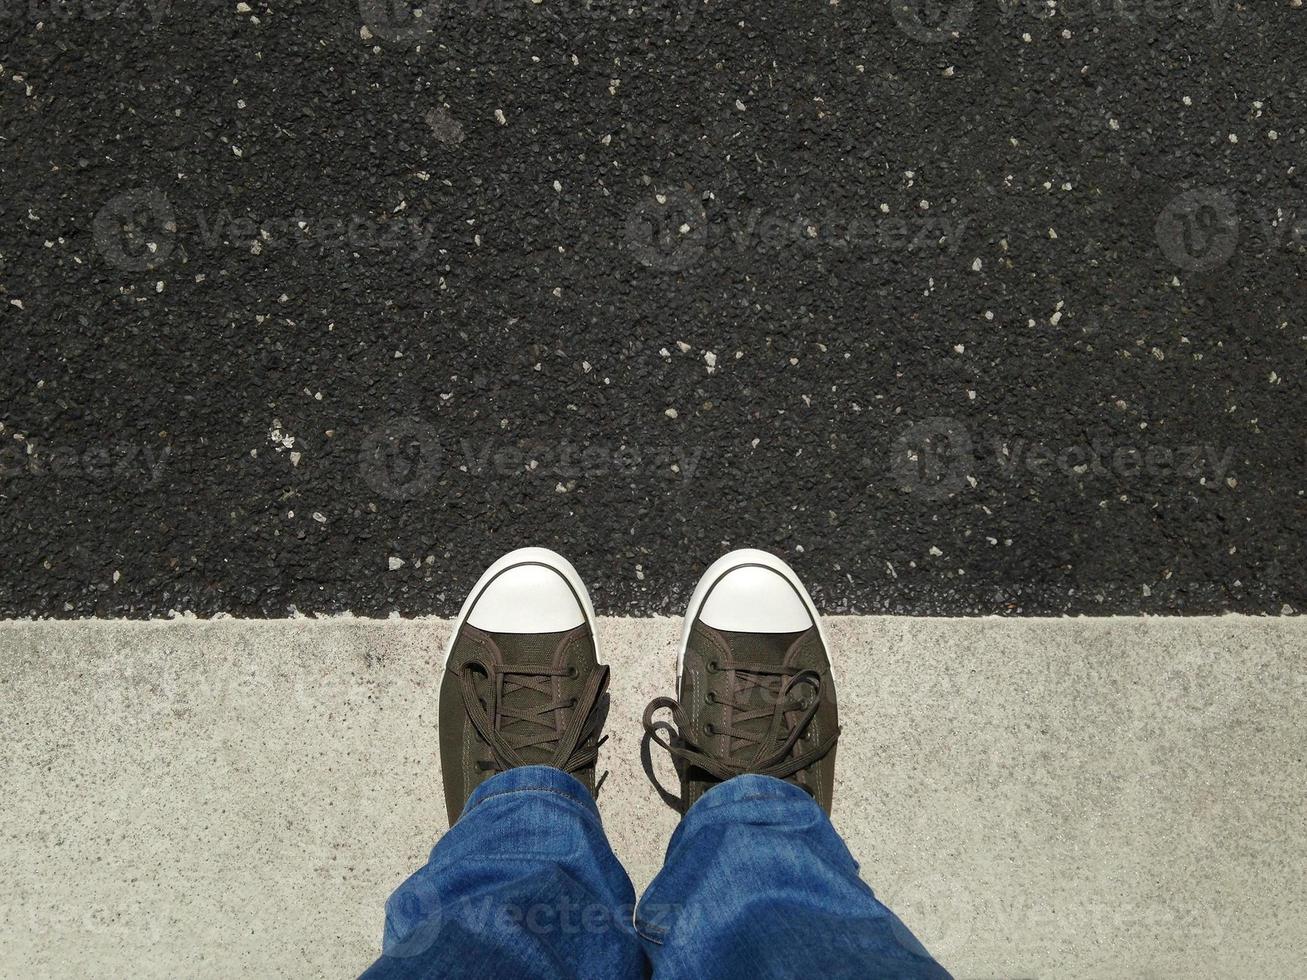 voeten in canvas schoenen die op asfalt staan, uitgelijnd met wegmarkeringen foto